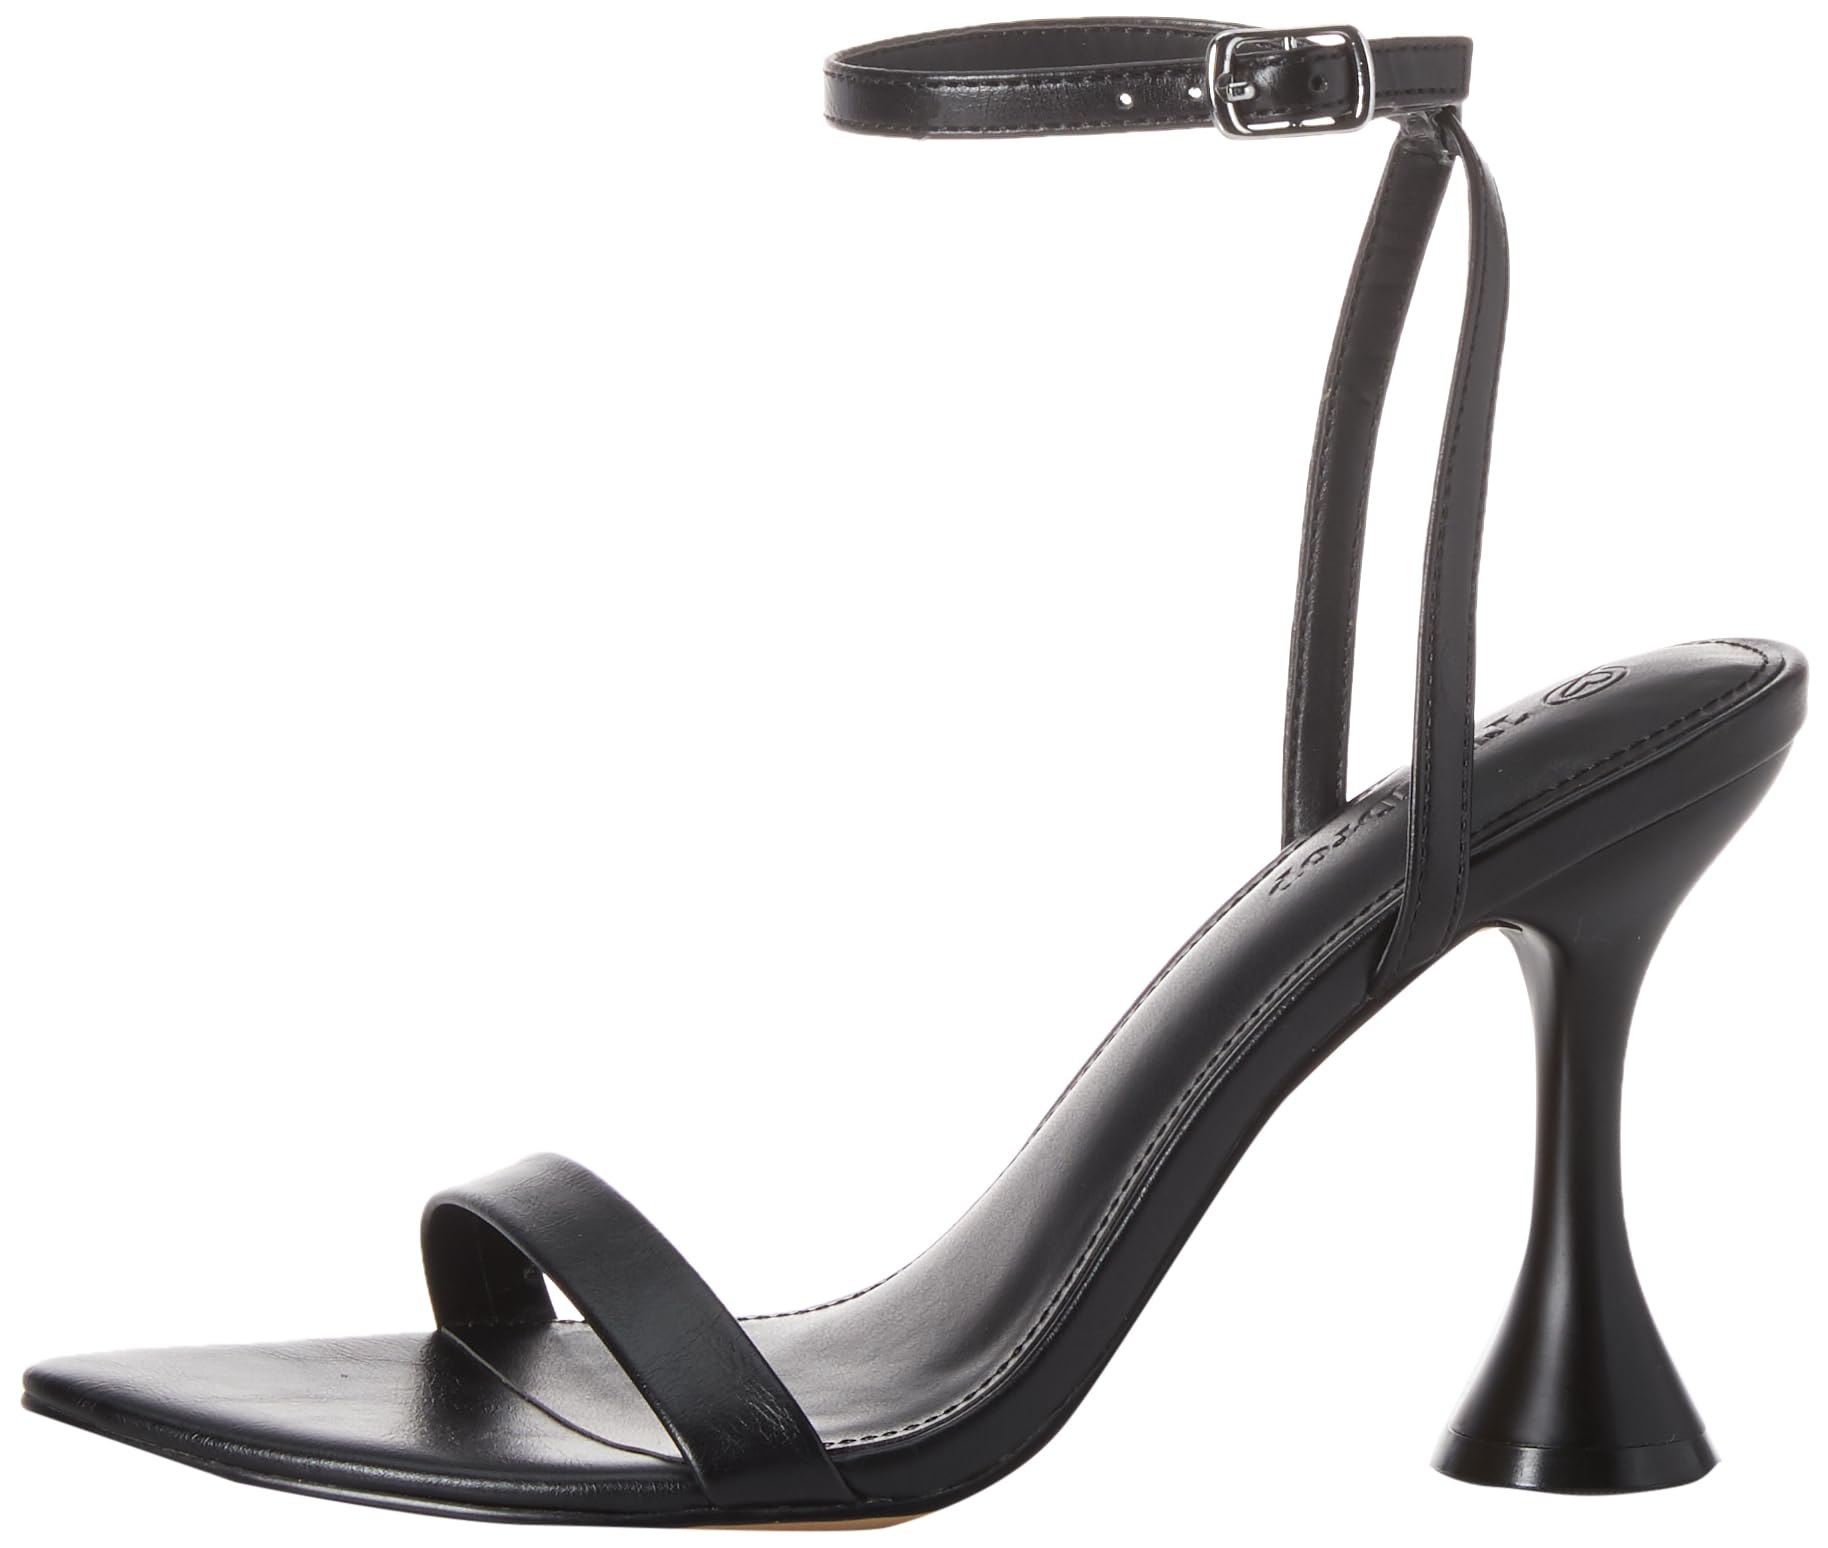 The Drop Women's Lina Trend Heel Sandal